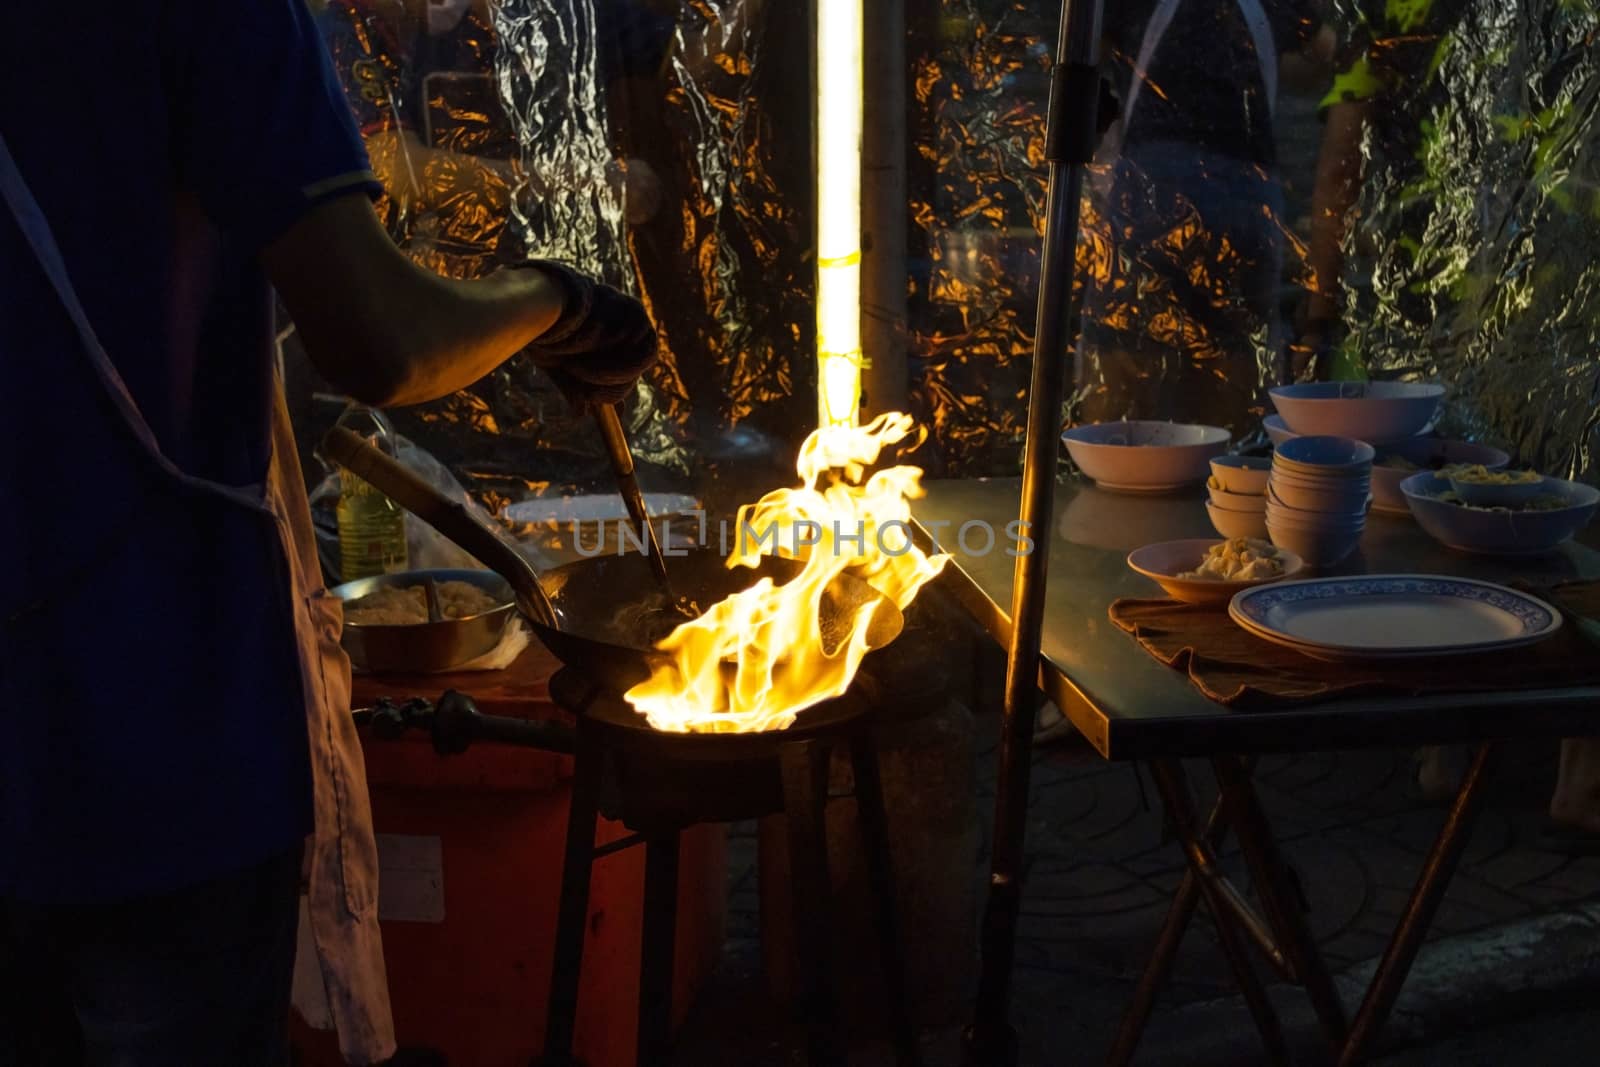 Street food in Bangkok Bangkok Thailand - Oct 24, 2020 :- Chef cooking with fire with frying pan on gas hob at yoawarat Bangkok Thailand.